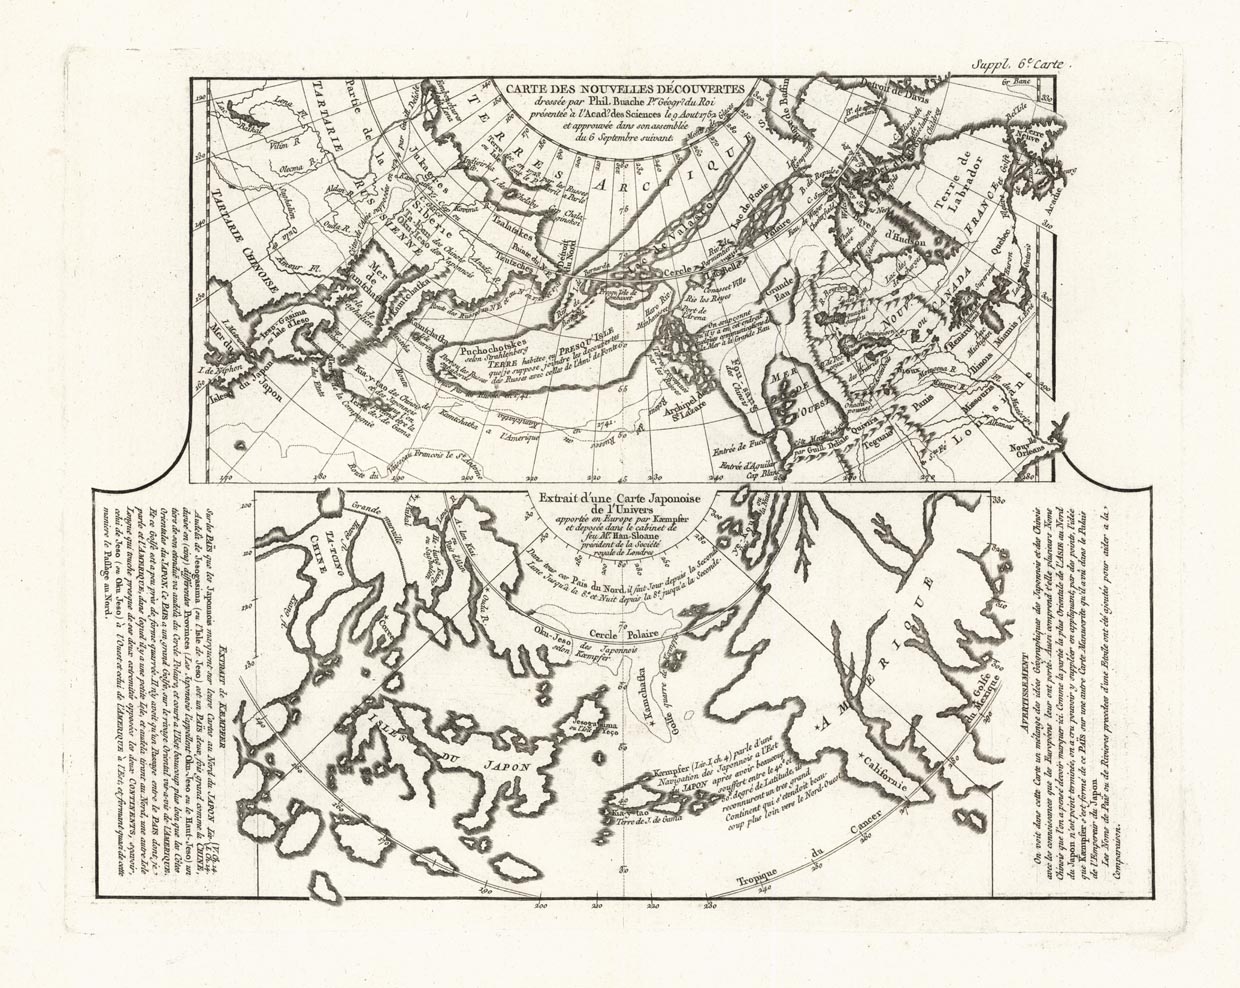 Carte des Nouvelles Decouvertes dressee par Phil. Buache [and] Extrait d'une Carte Japonoise de l'Univers...